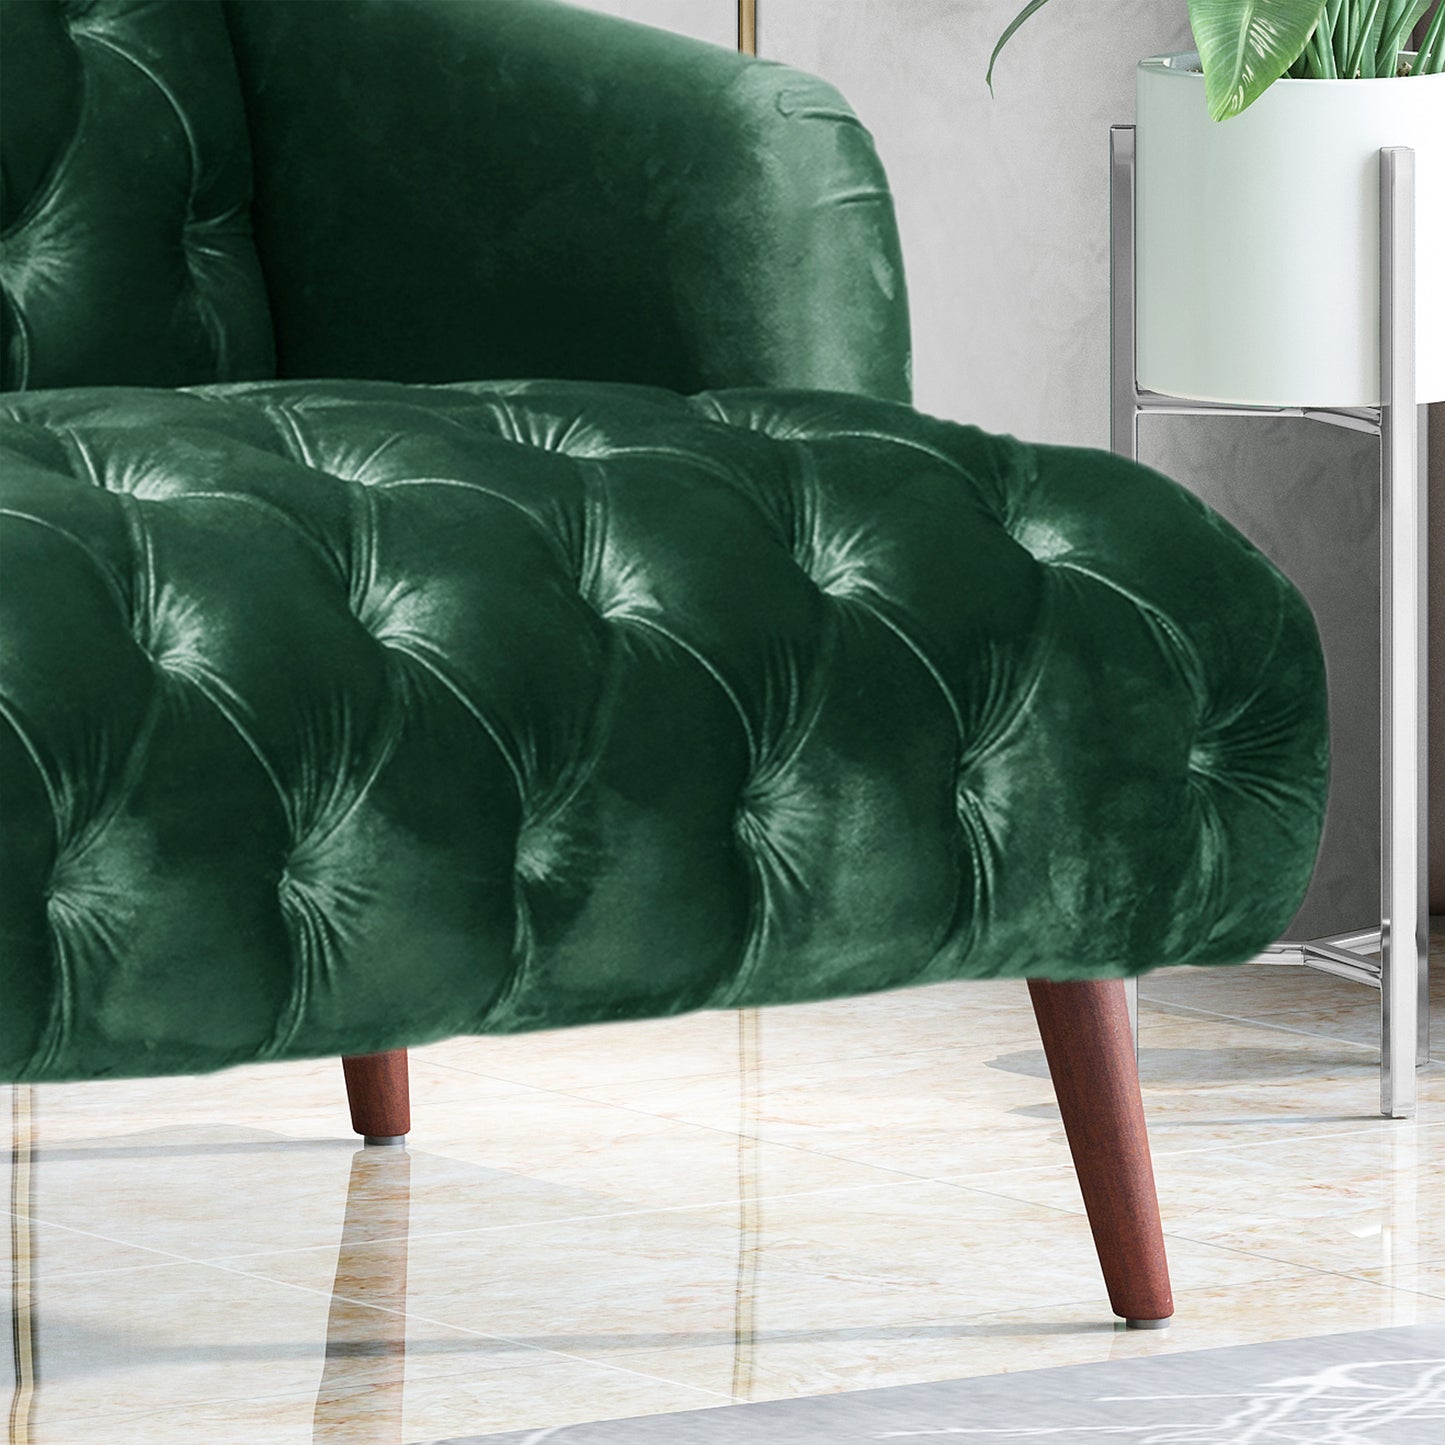 Kayleigh Modern Glam Tufted Velvet 3 Seater Sofa